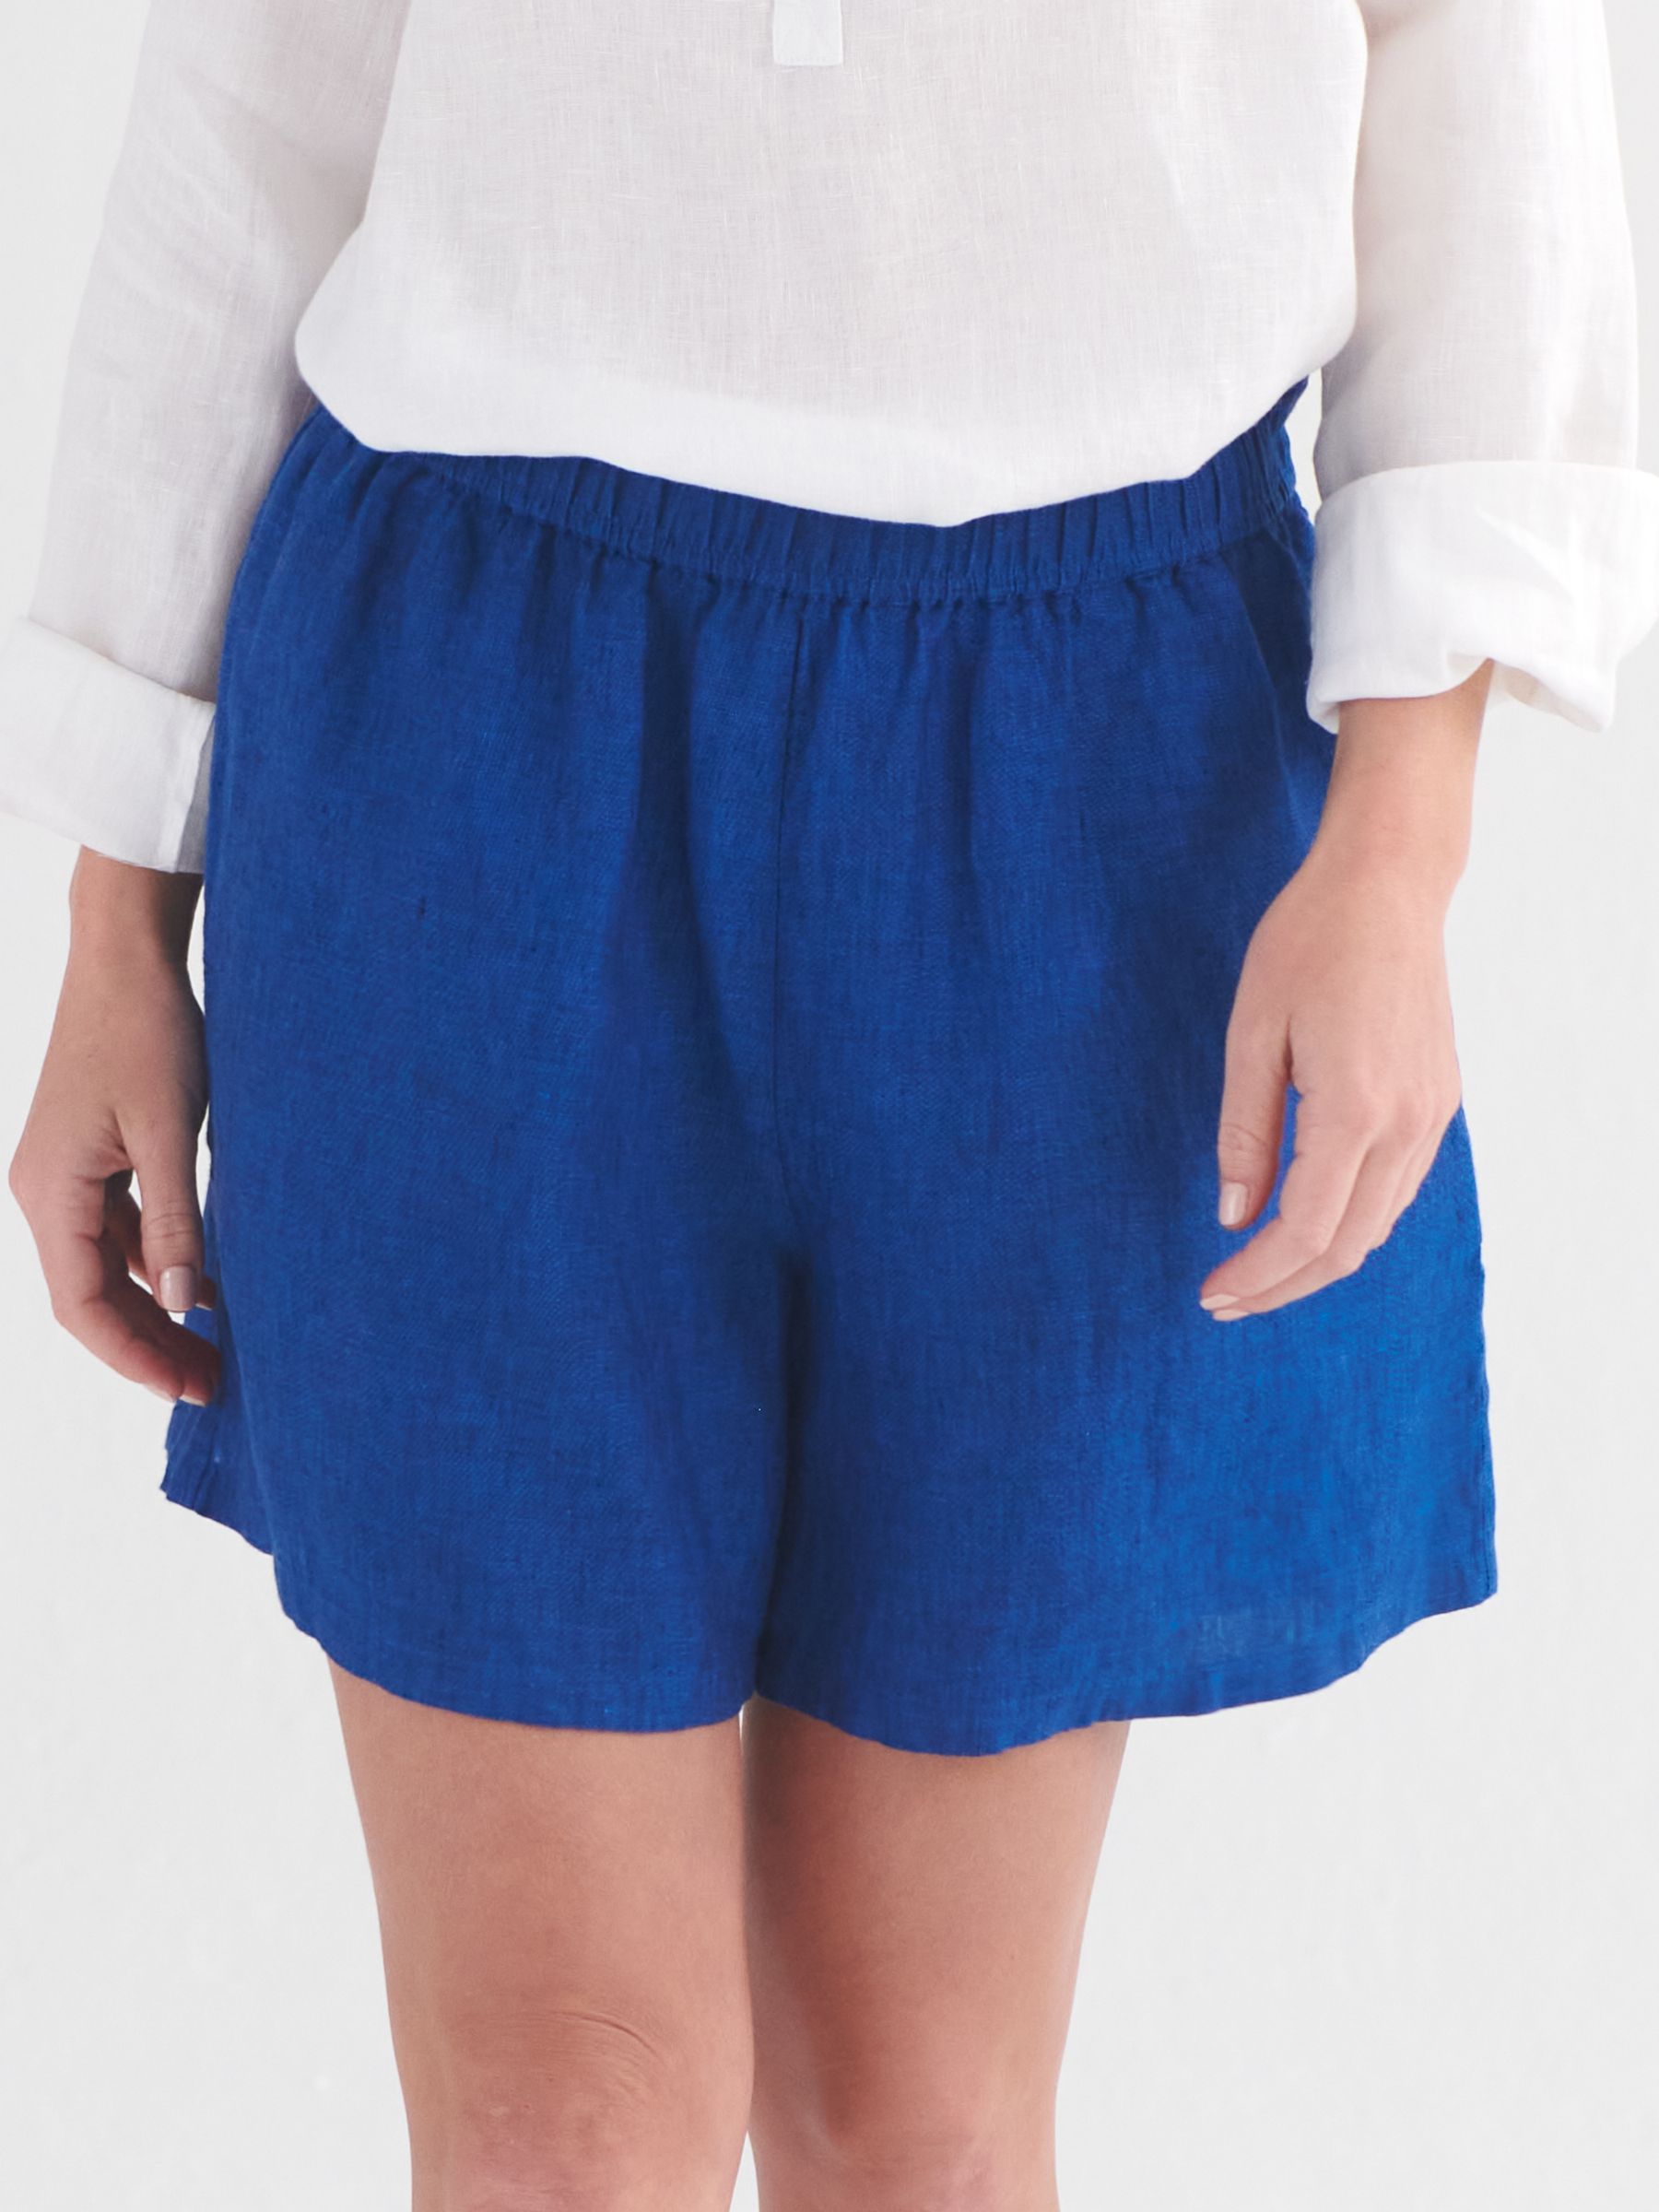 NRBY Poppie Linen Shorts, Indigo Blue, S